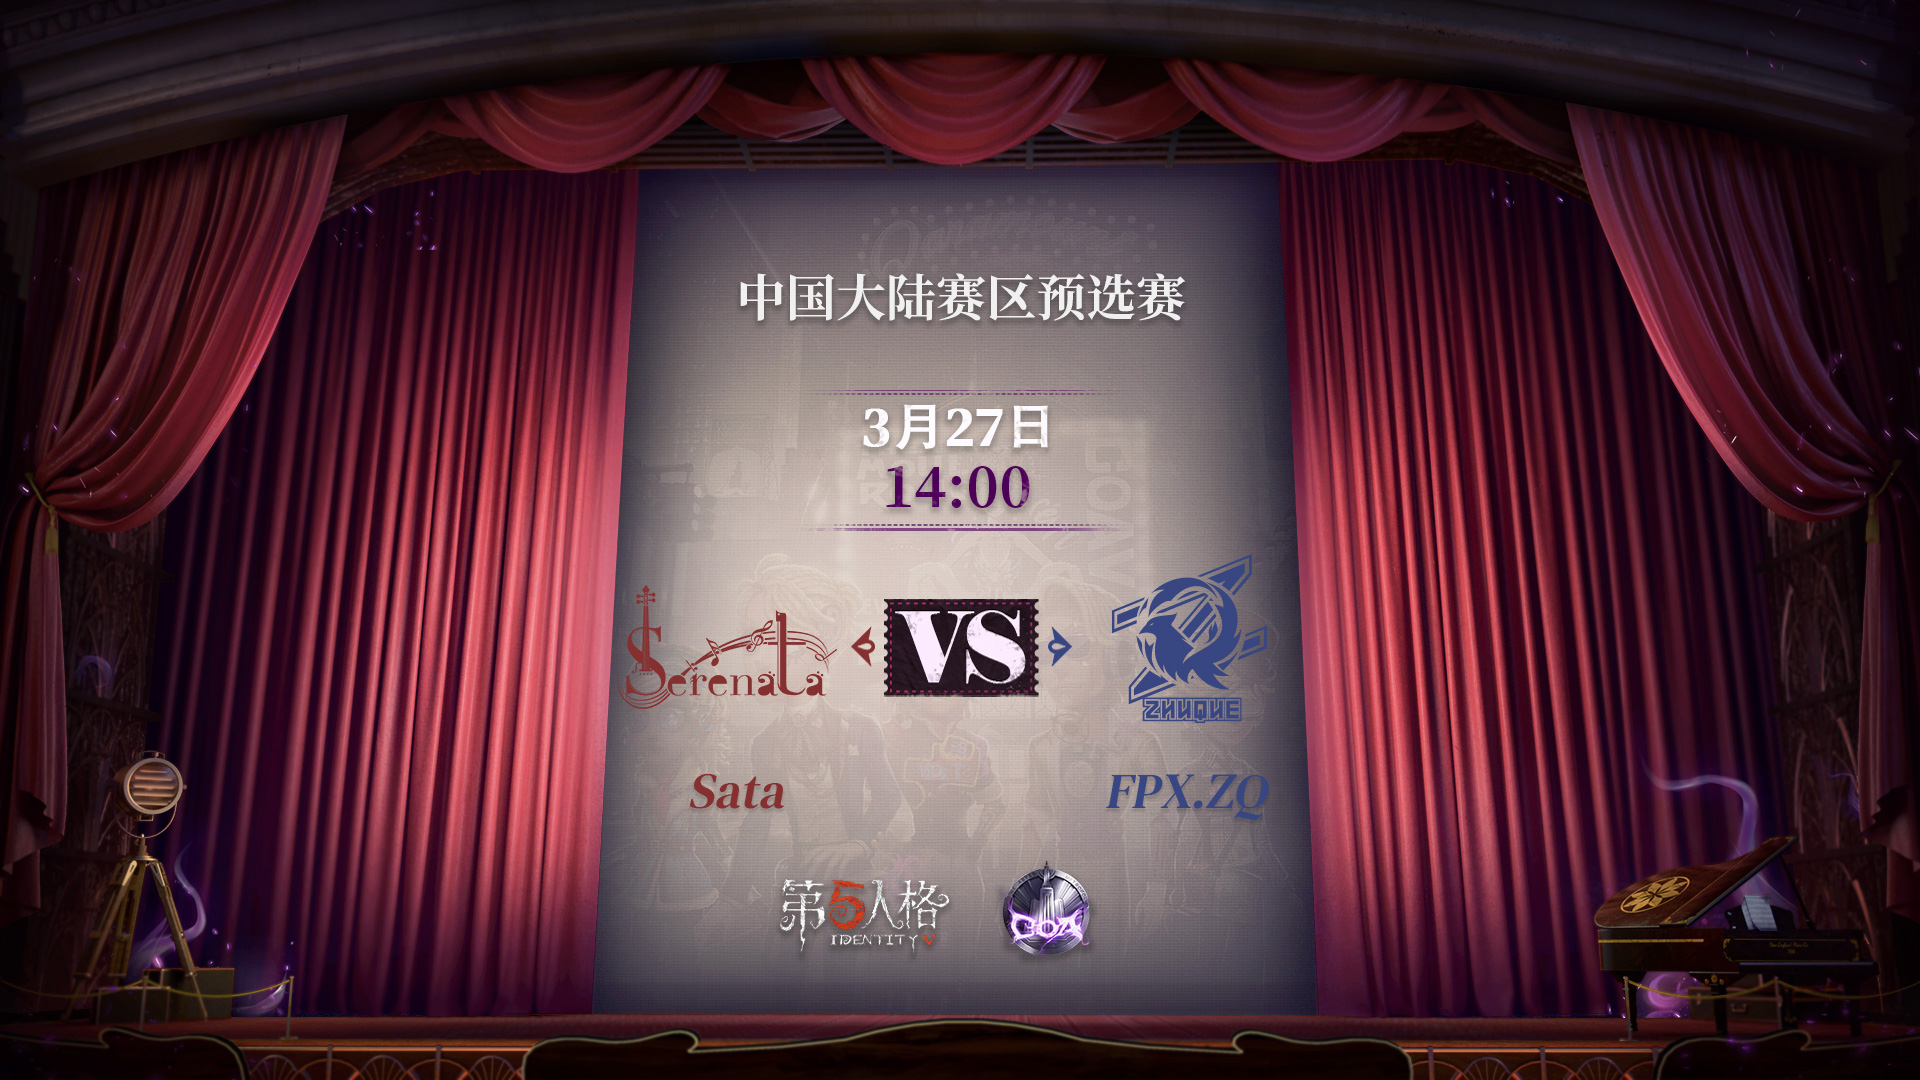 【深渊的呼唤Ⅴ】大陆赛区预选赛Day4 FPX.ZQ vs Sata